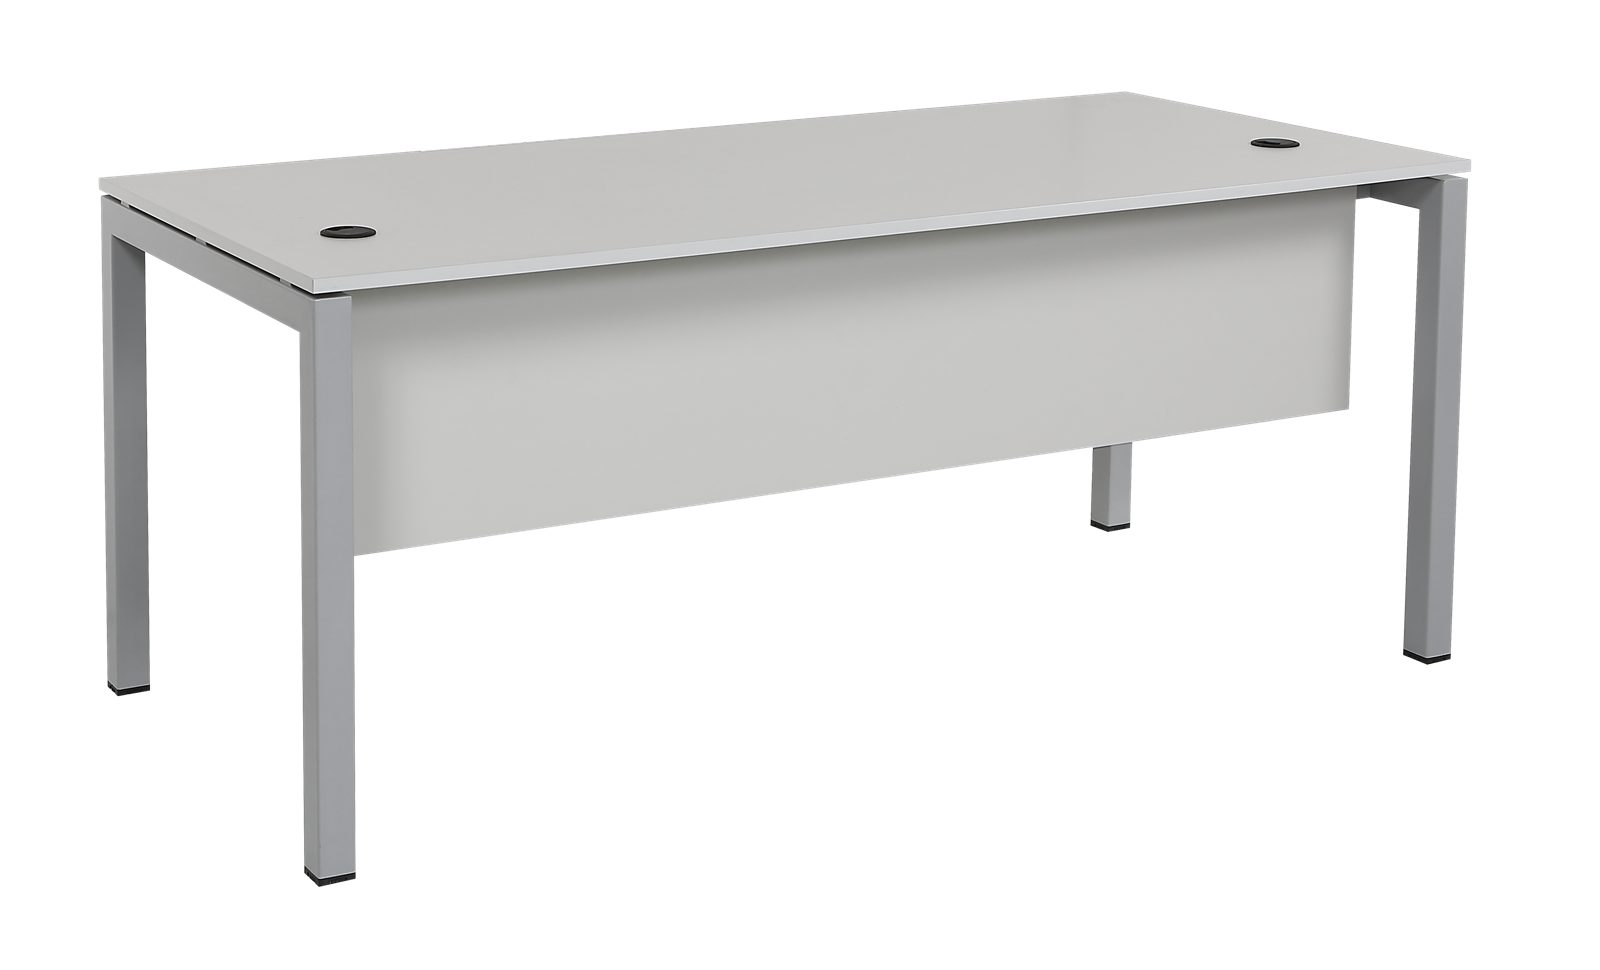 Furni24 Schreibtisch Schreibtisch Tetra, 180 x 80 x 75 cm, grau Dekor/silber RAL 9006